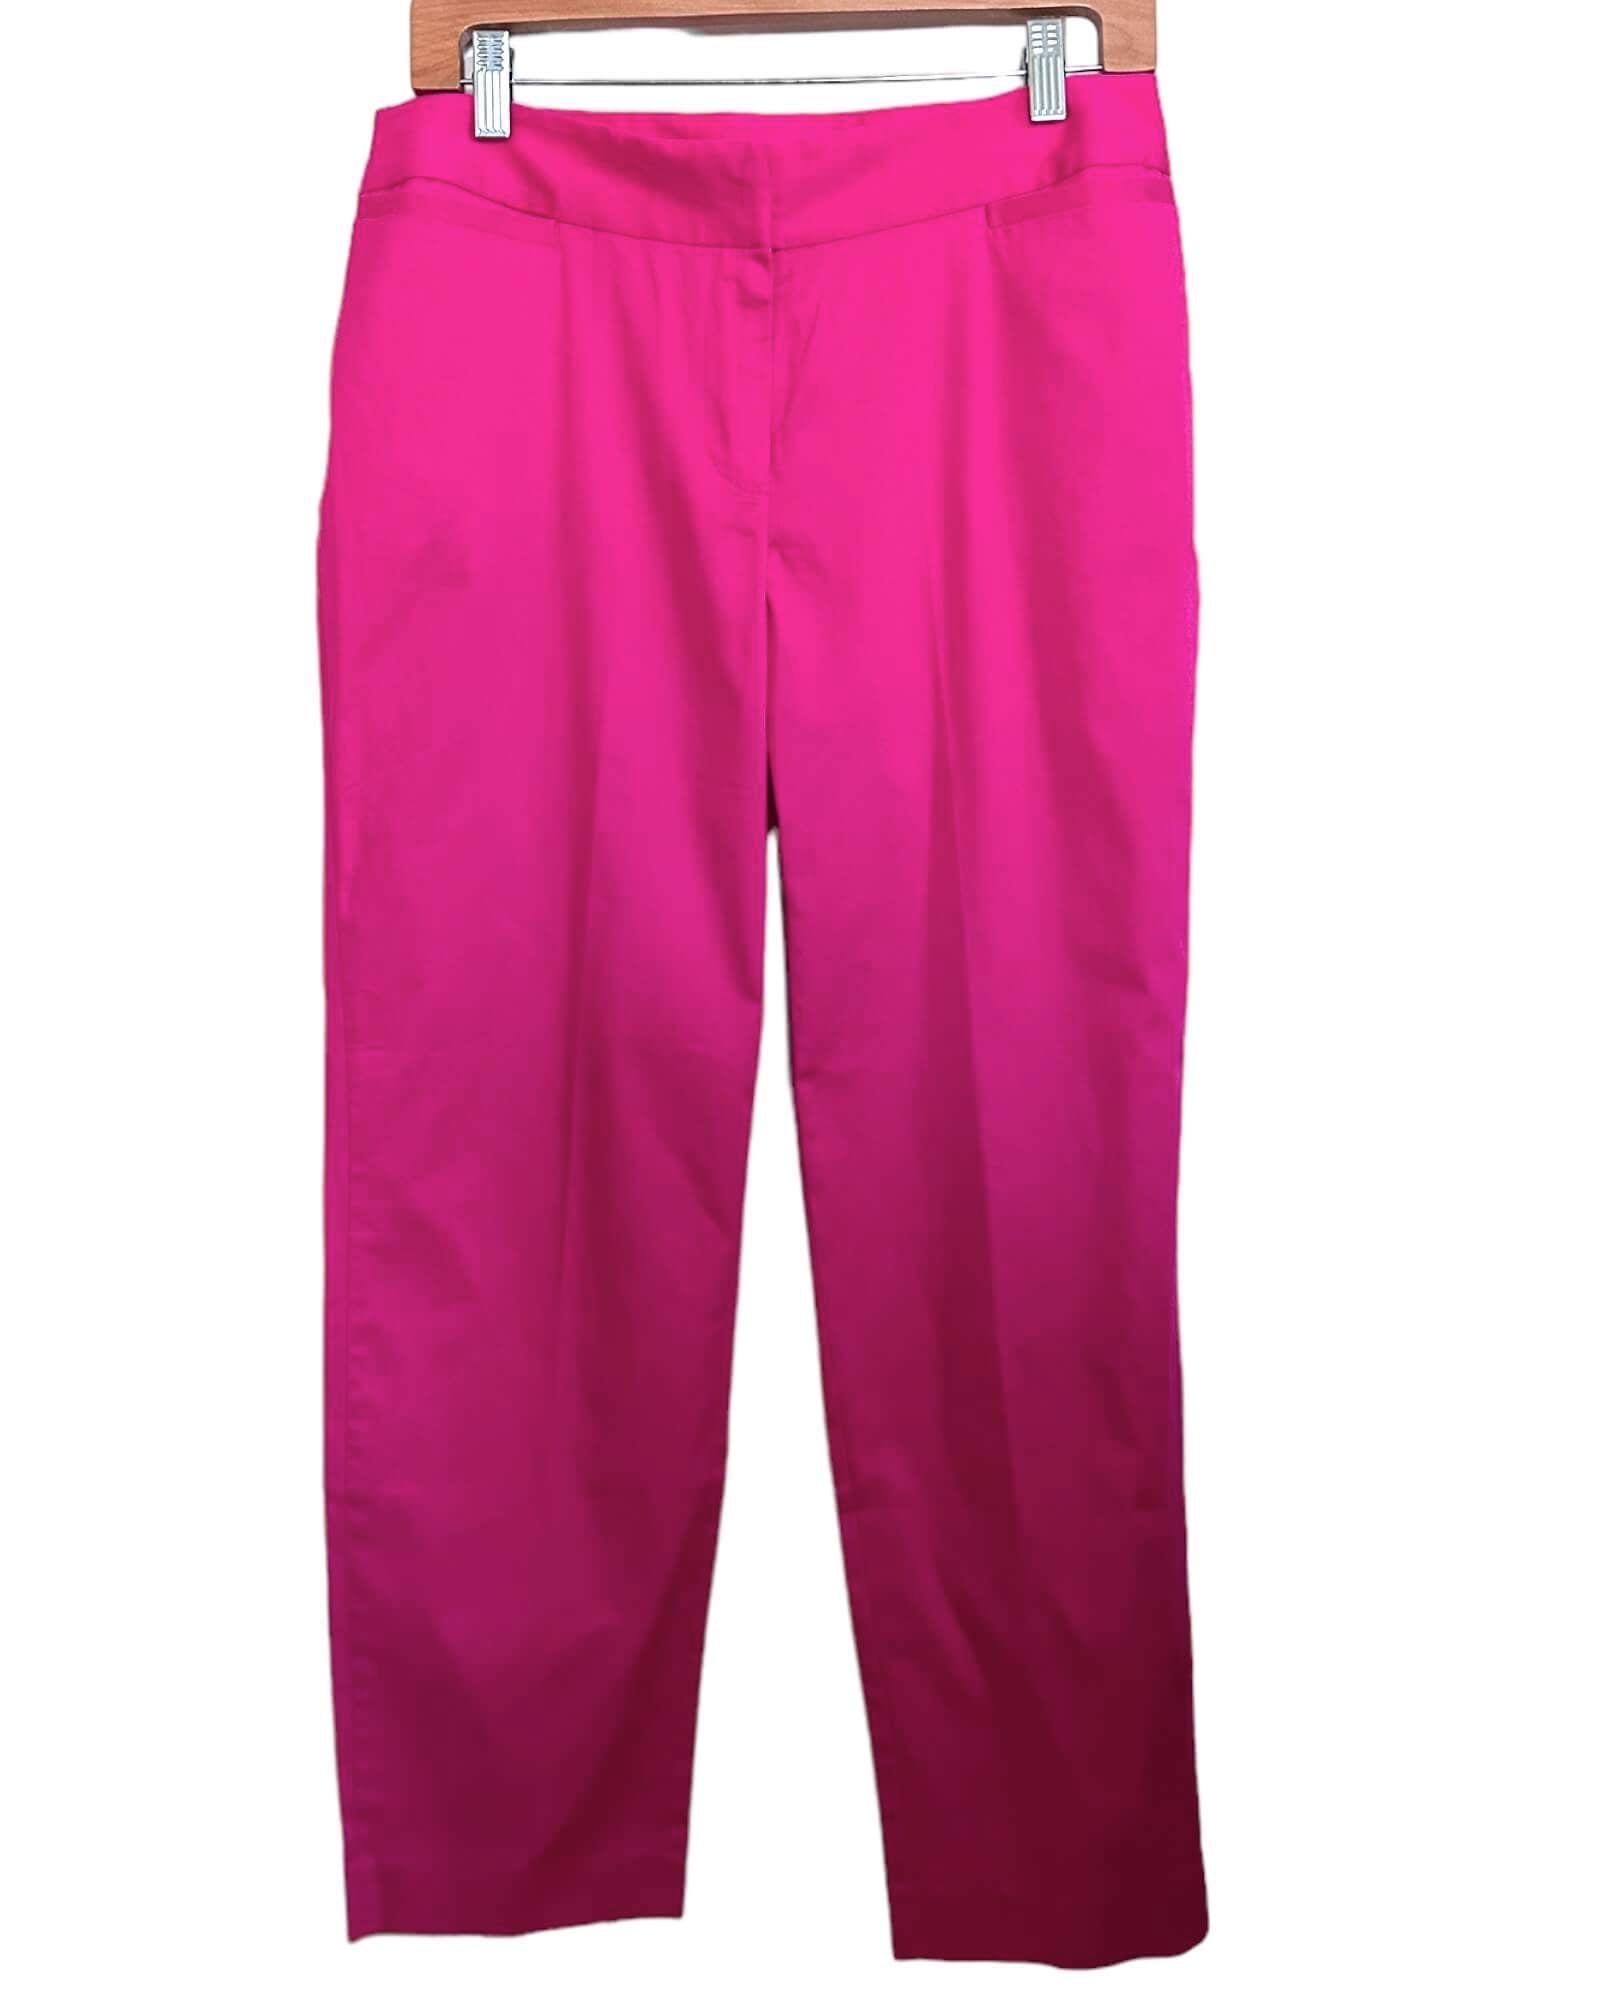 Light Summer Pink Pant